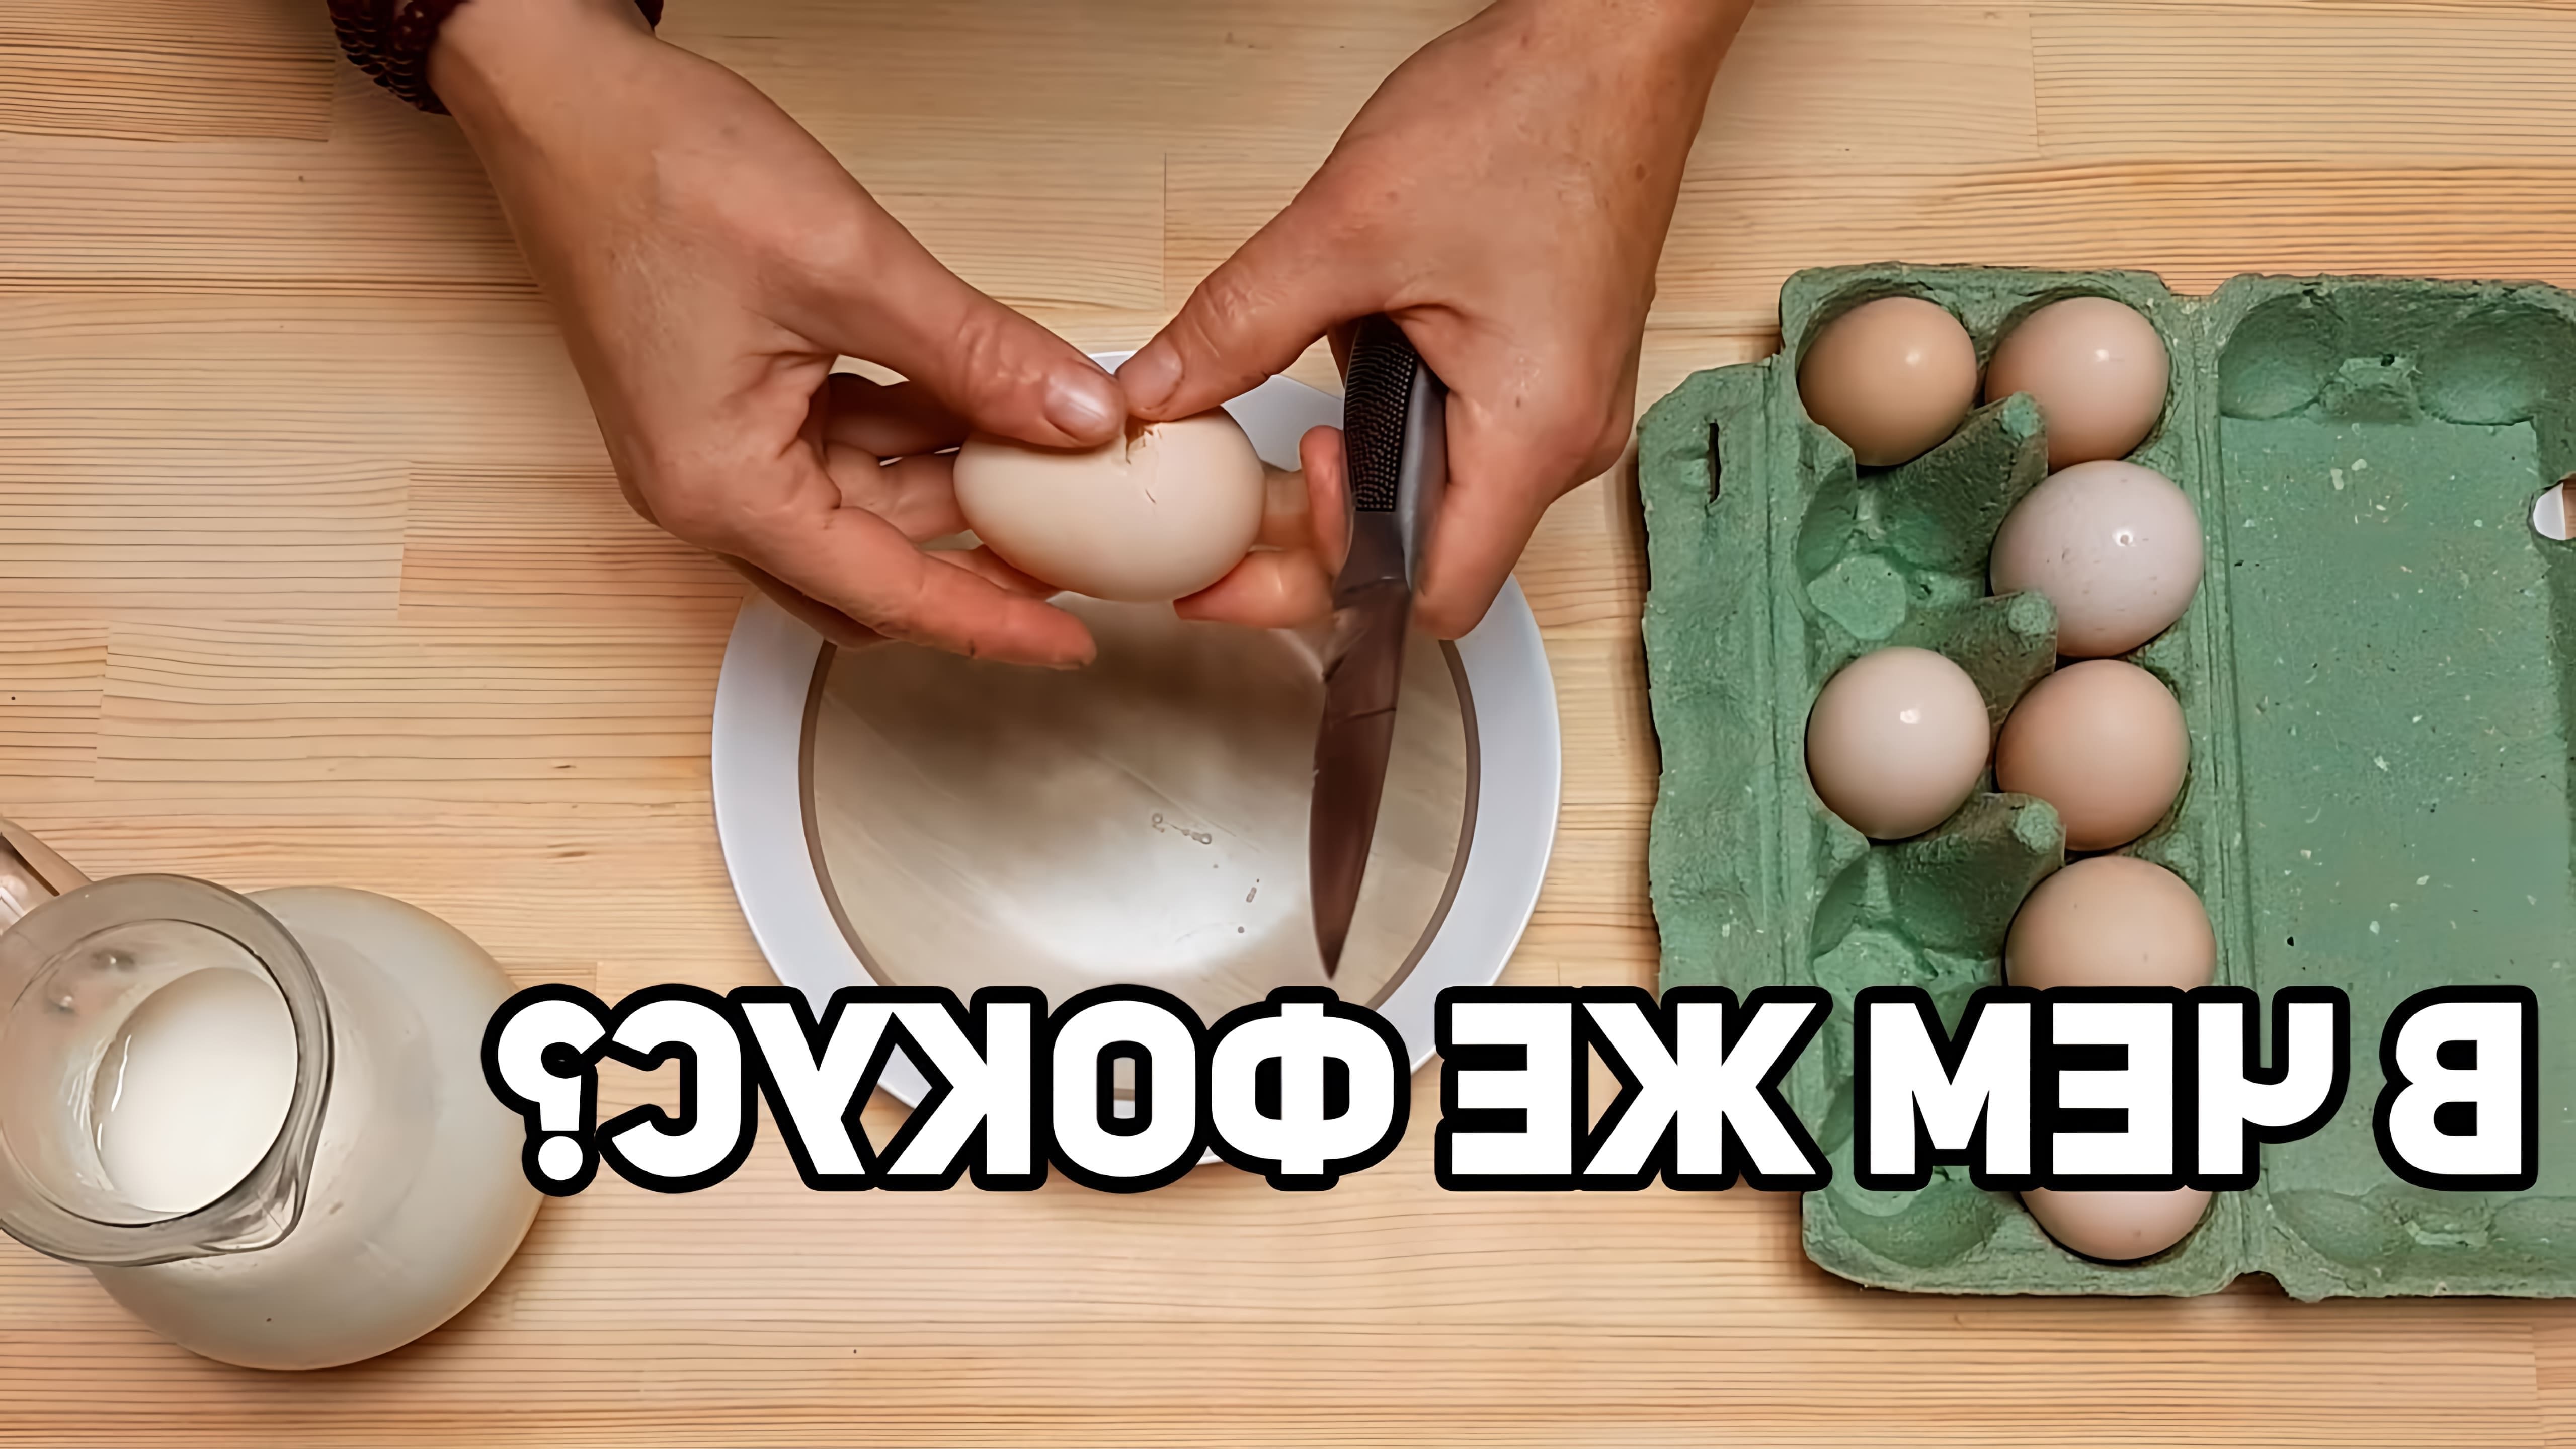 В этом видео автор показывает, как приготовить омлет из 6 яиц, используя необычный метод